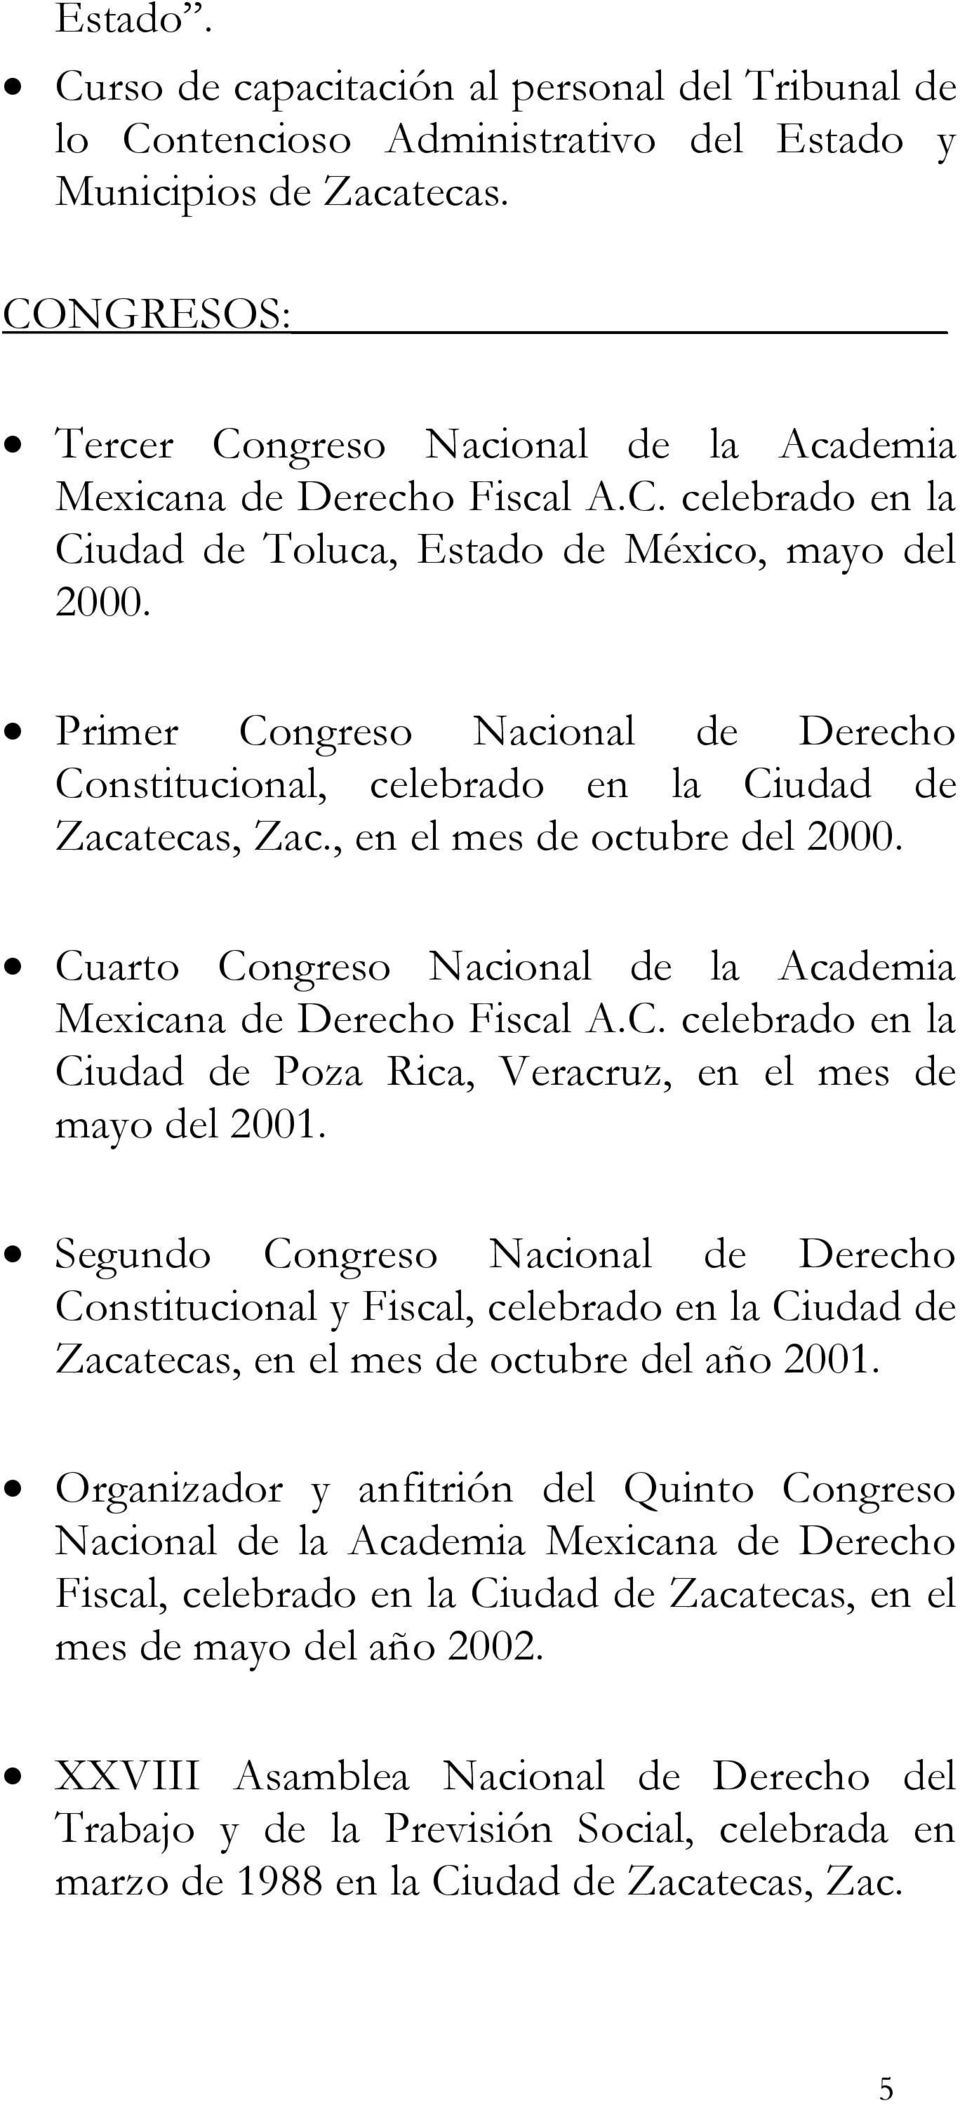 Primer Congreso Nacional de Derecho Constitucional, celebrado en la Ciudad de Zacatecas, Zac., en el mes de octubre del 2000. Cuarto Congreso Nacional de la Academia Mexicana de Derecho Fiscal A.C. celebrado en la Ciudad de Poza Rica, Veracruz, en el mes de mayo del 2001.